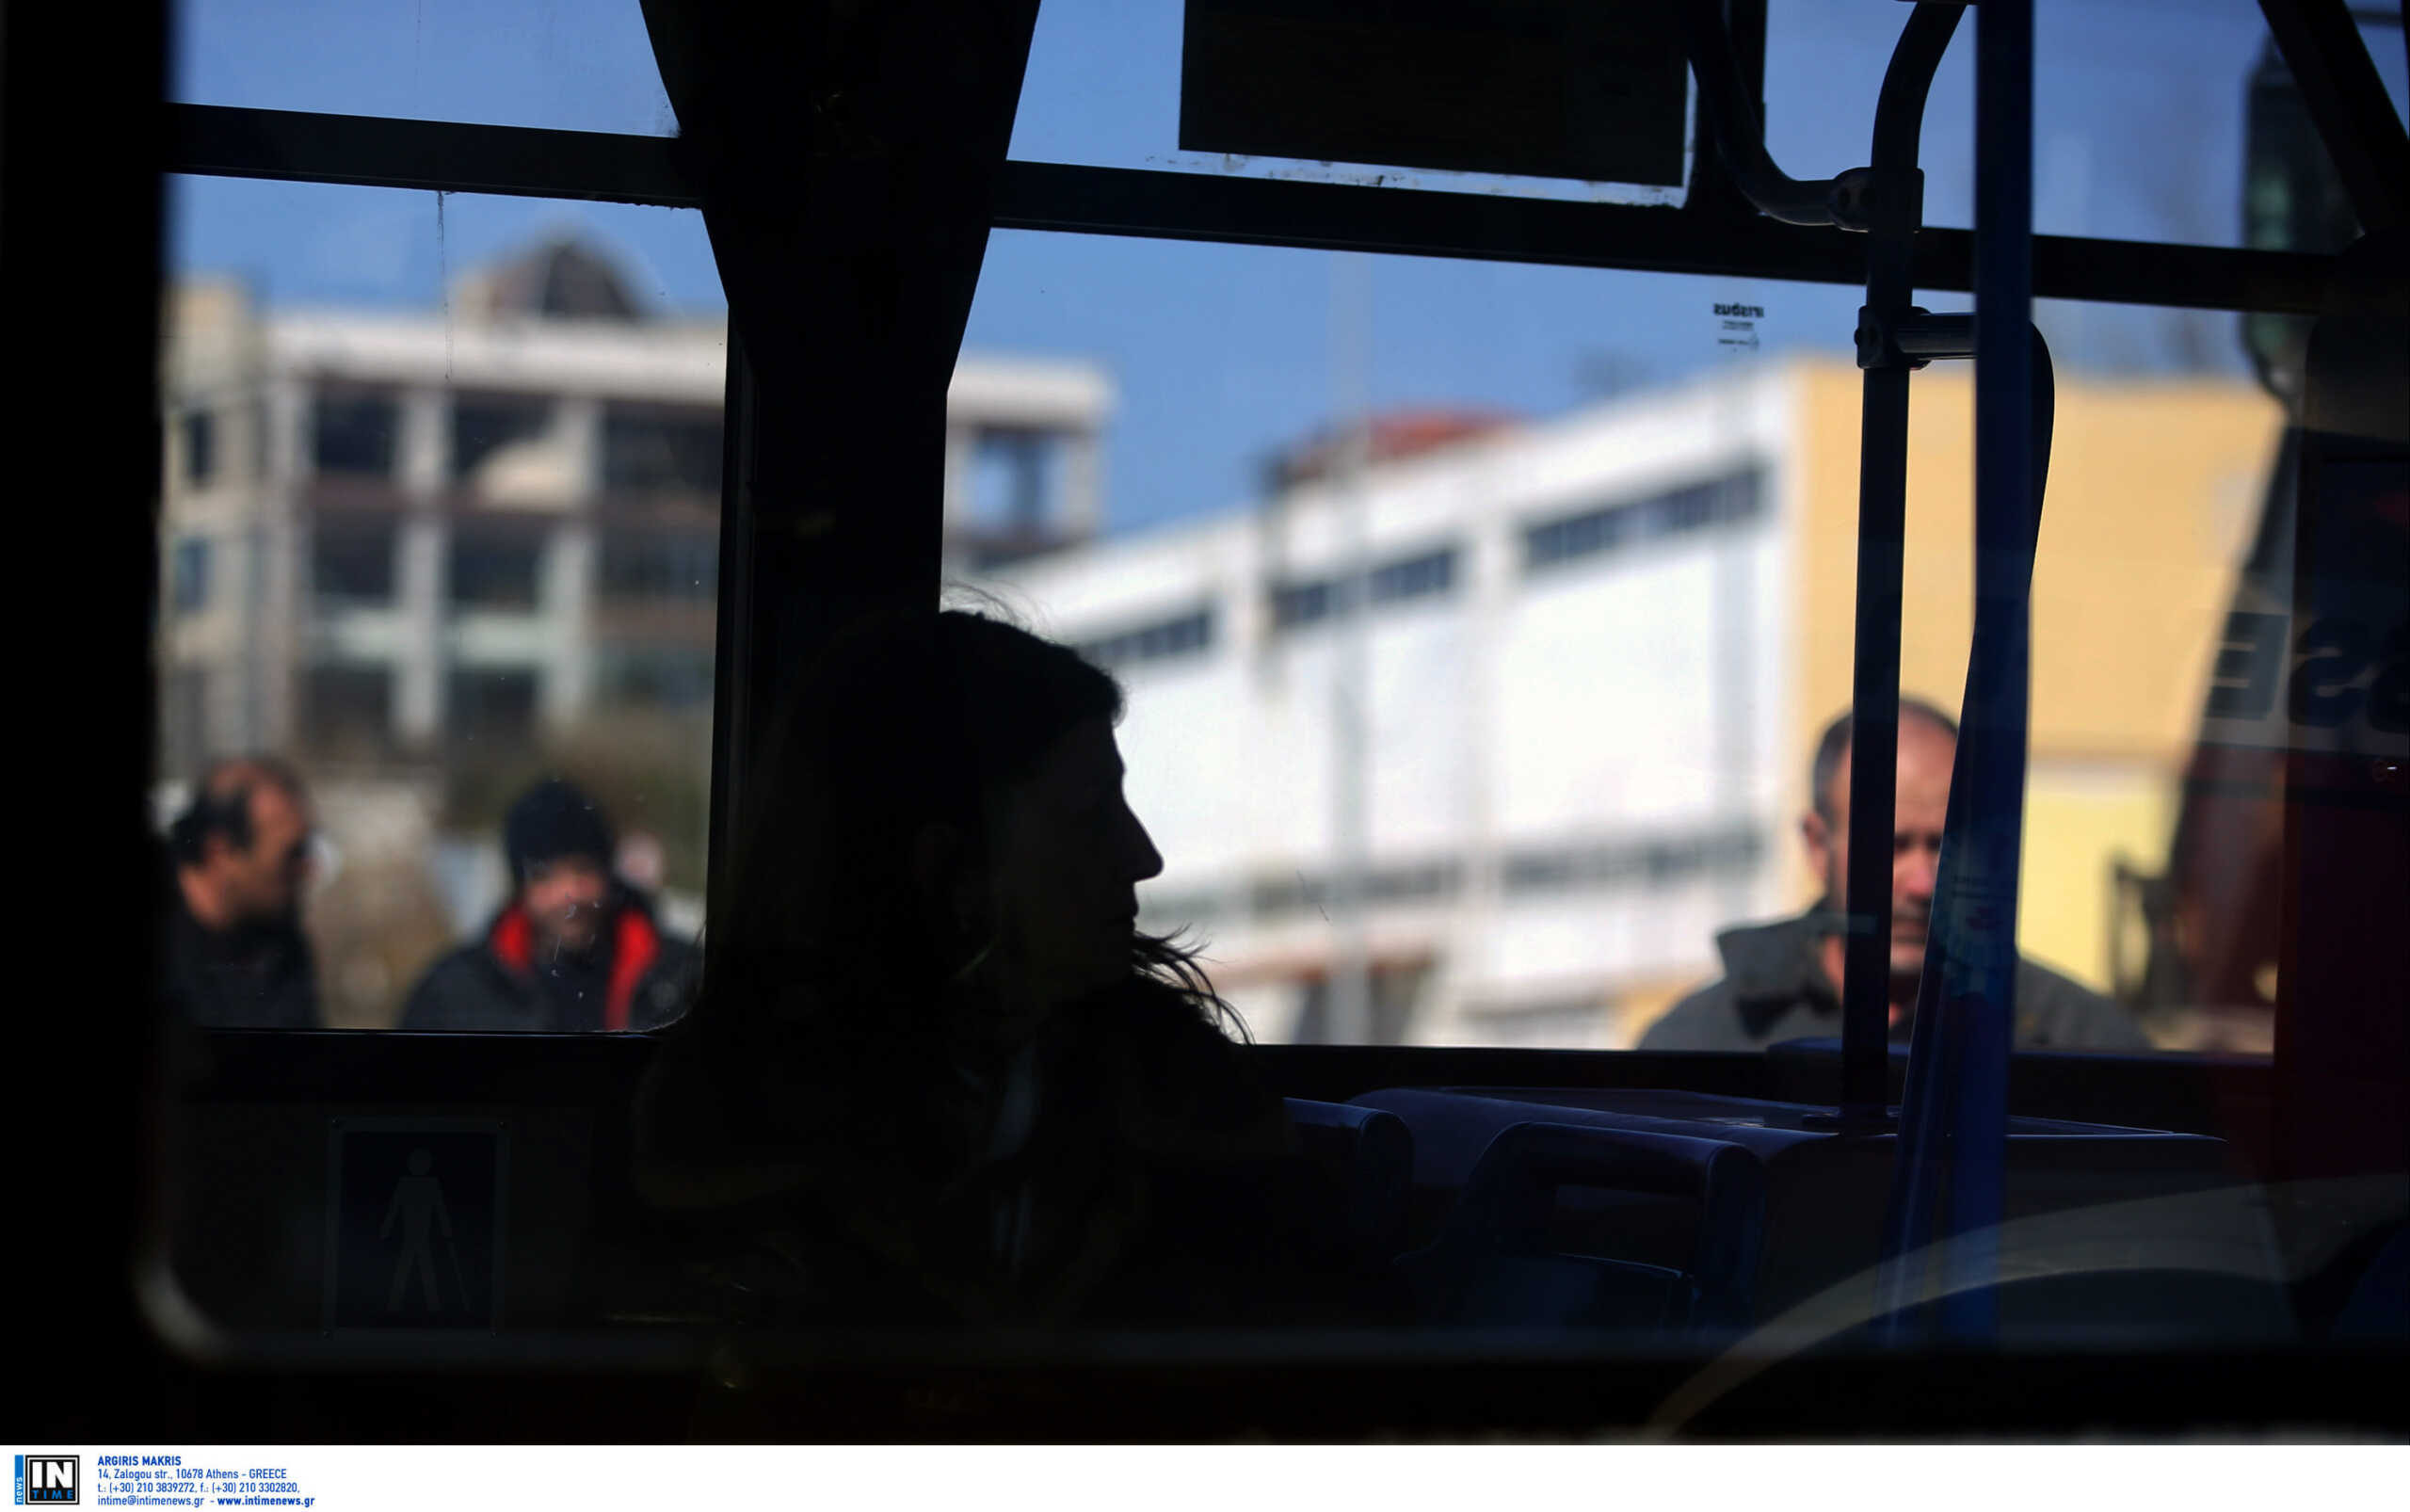 Θεσσαλονίκη: ΚΤΕΛ έπαθε βλάβη και οι επιβάτες έσπασαν το τζάμι για να βγουν